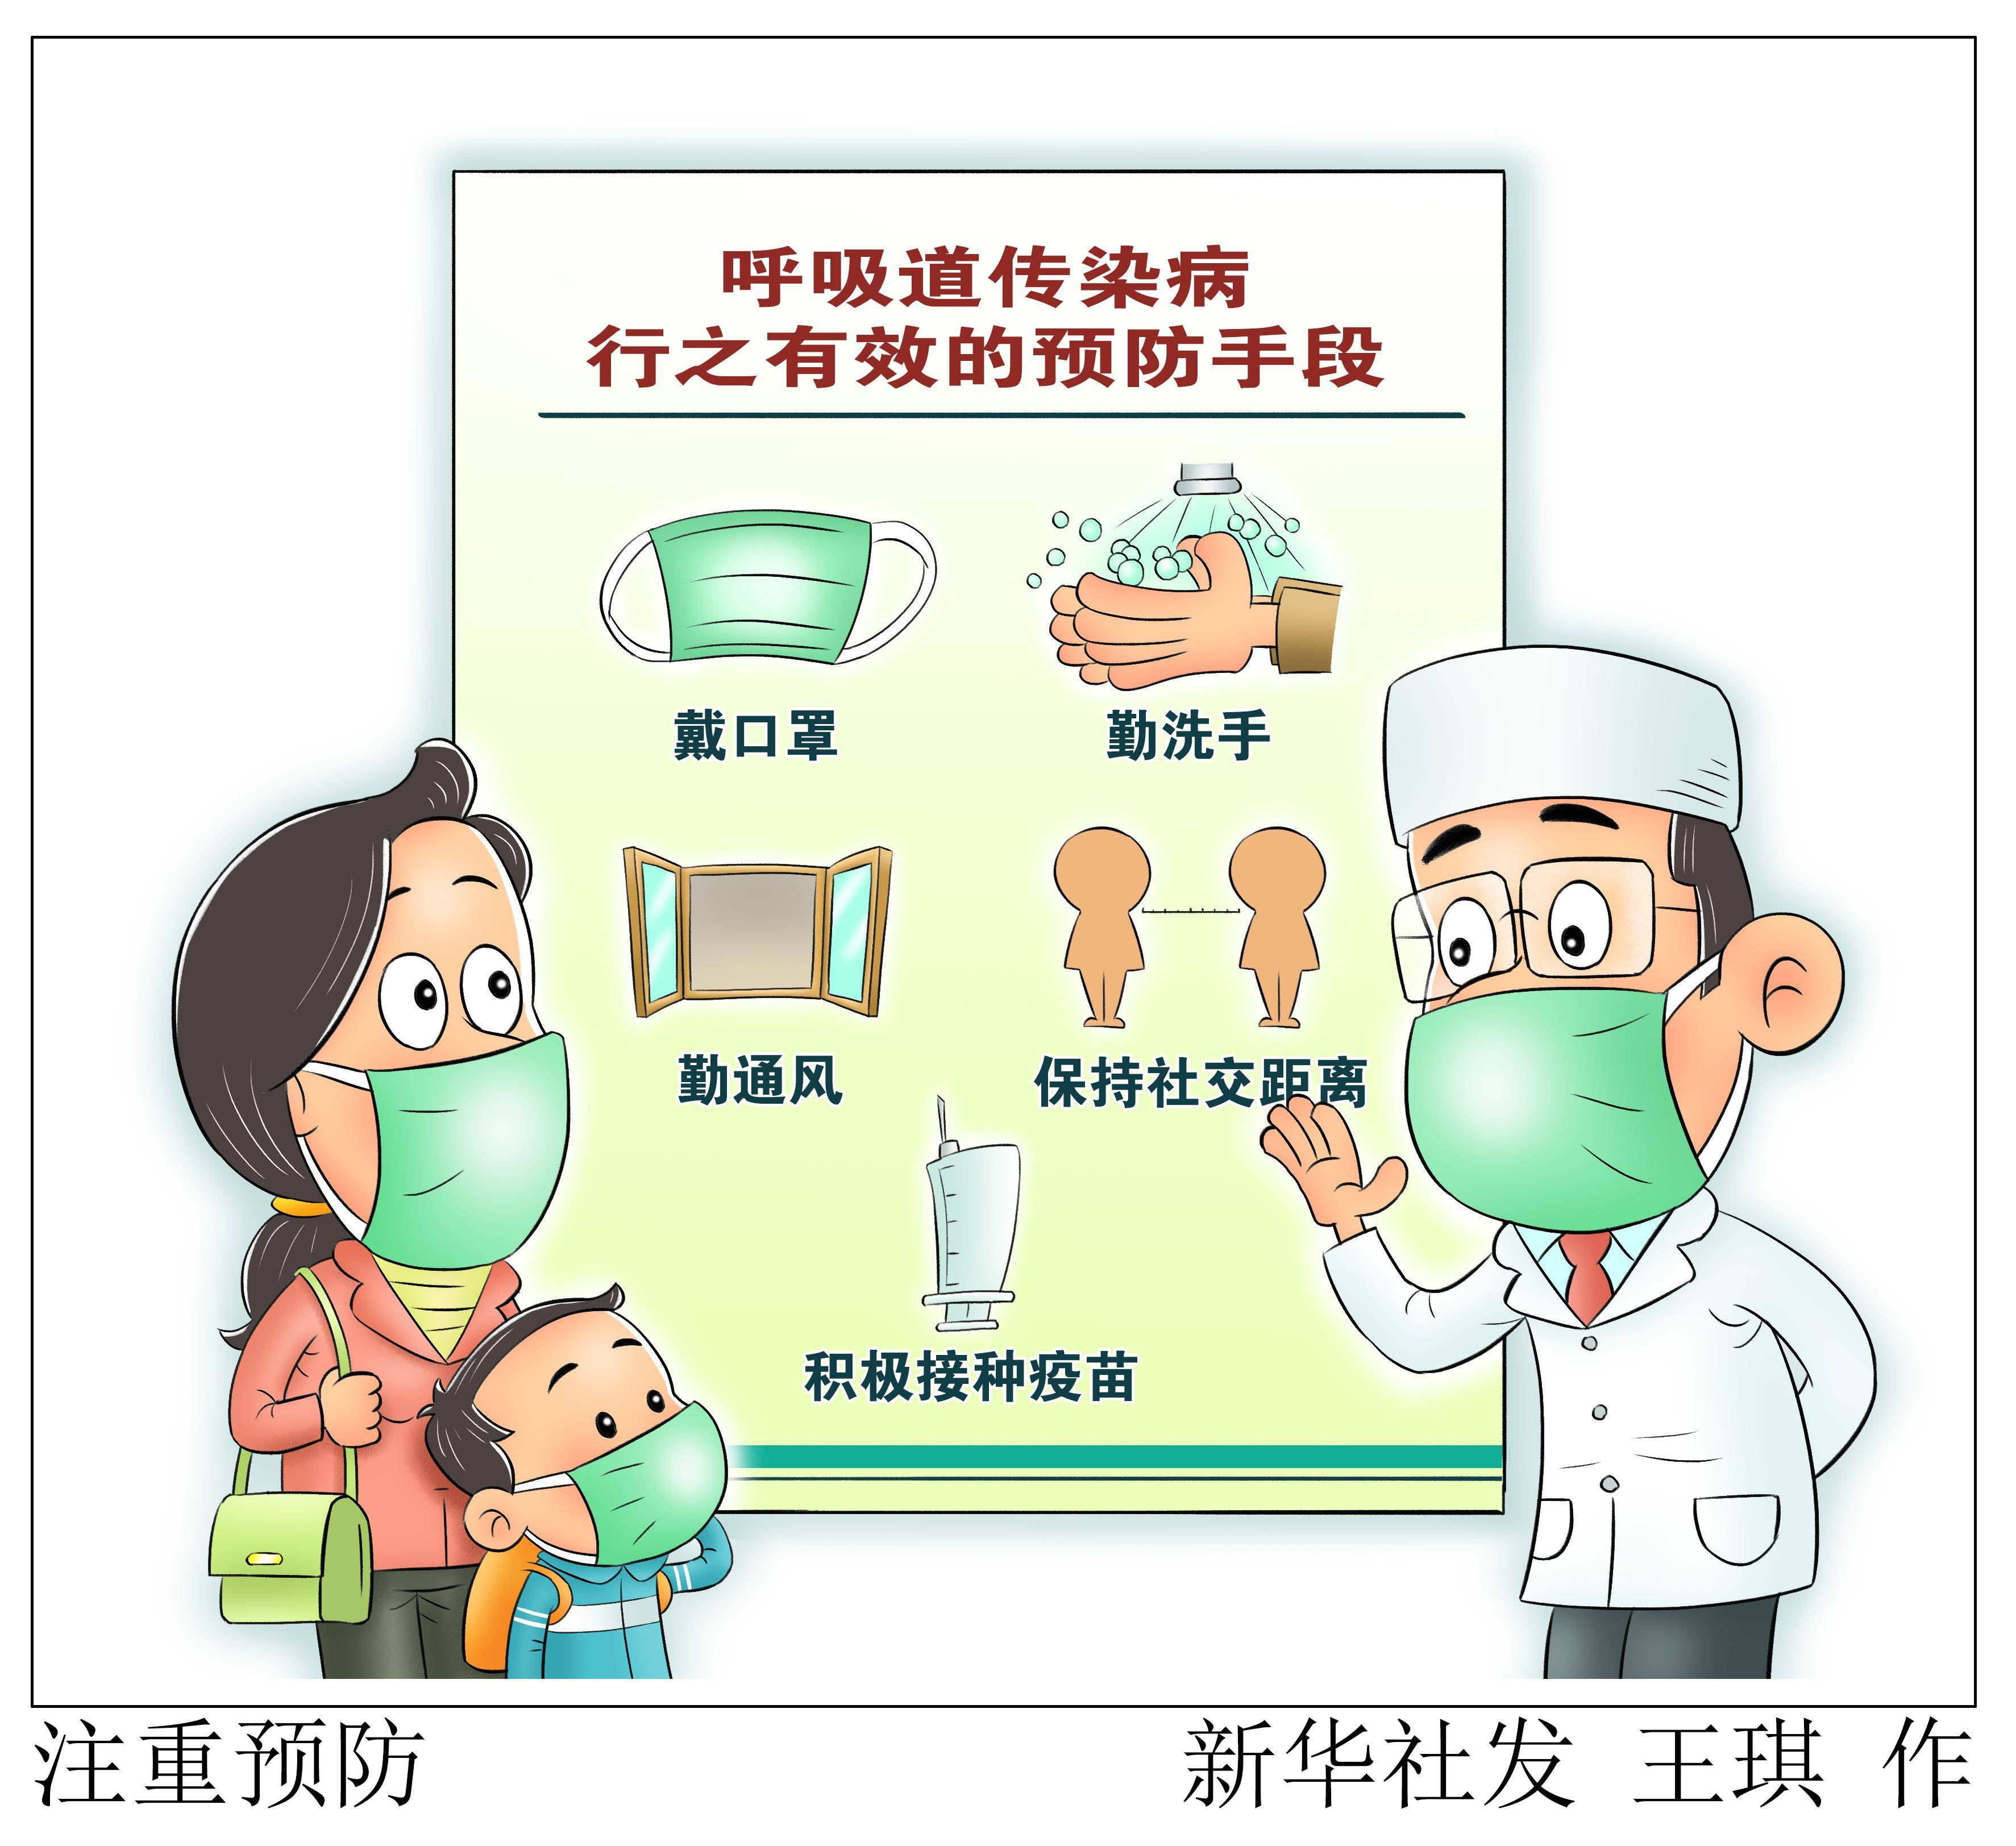 2023年3月13日(漫画)注重预防根据疾控部门流感监测,当前我国流感病毒